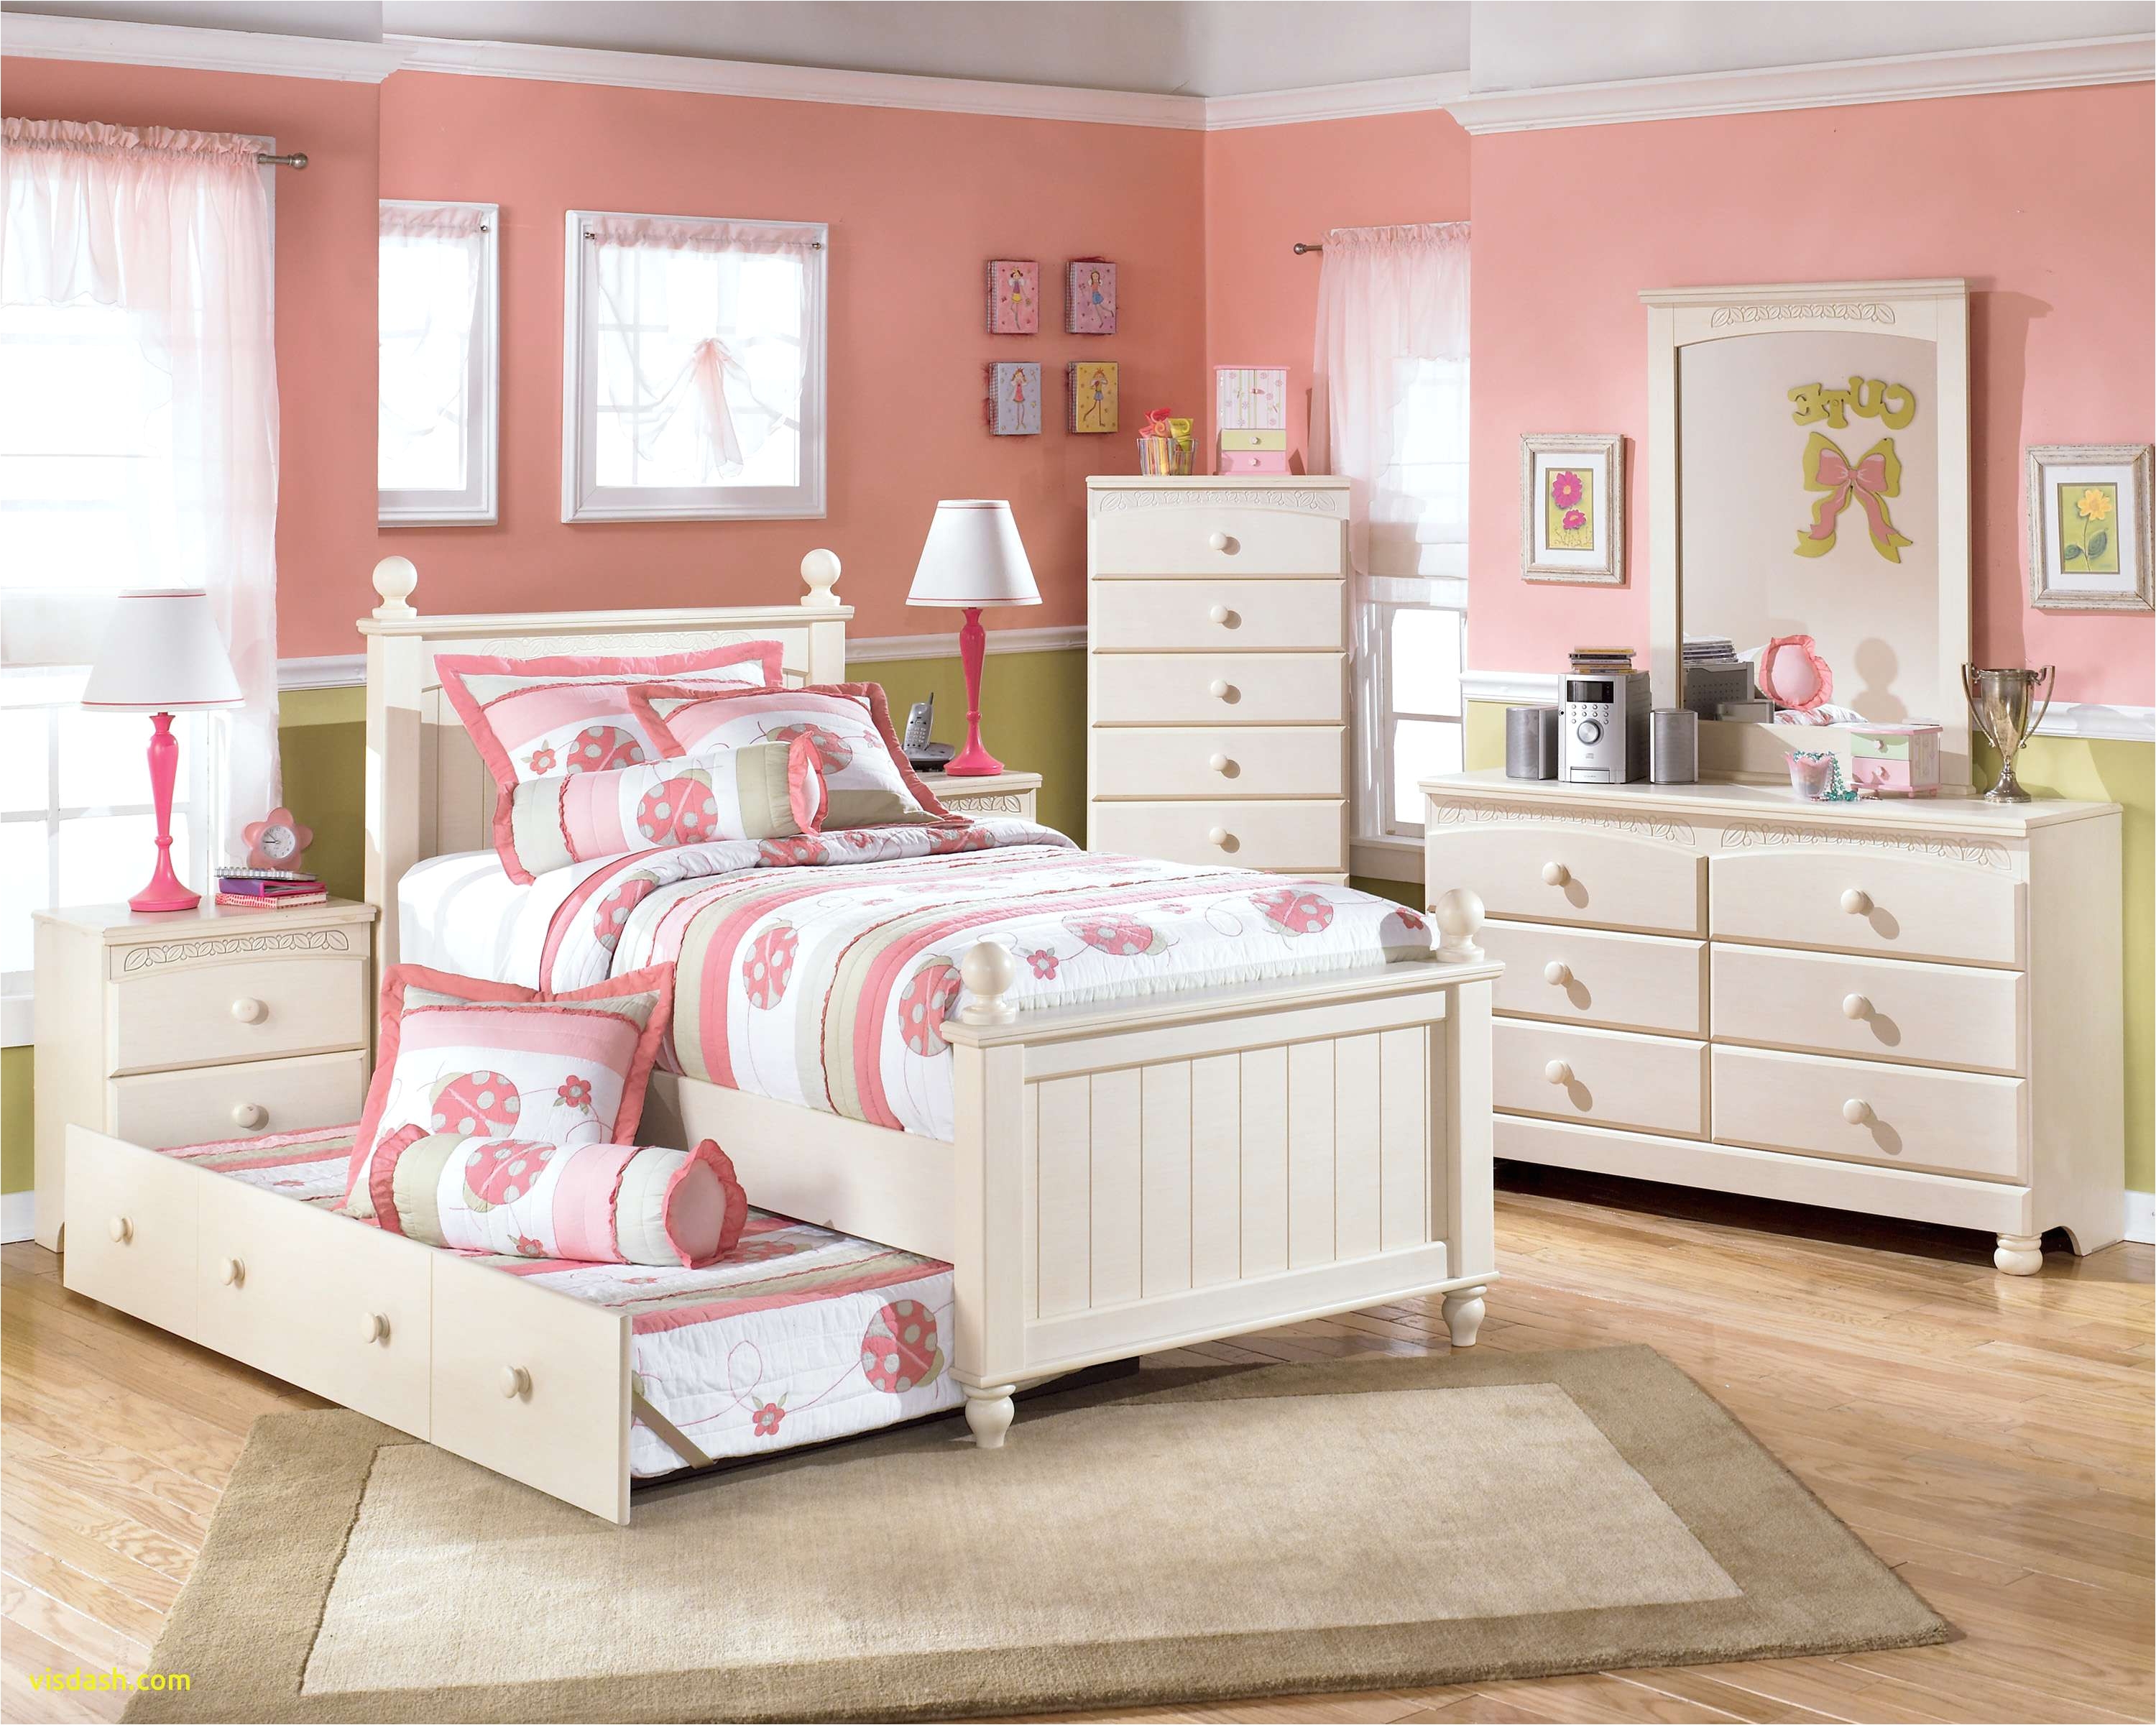 Bedroom Sets for Girls Appealing toddler Girl Bedroom Sets at Tar Children S Furniture Best